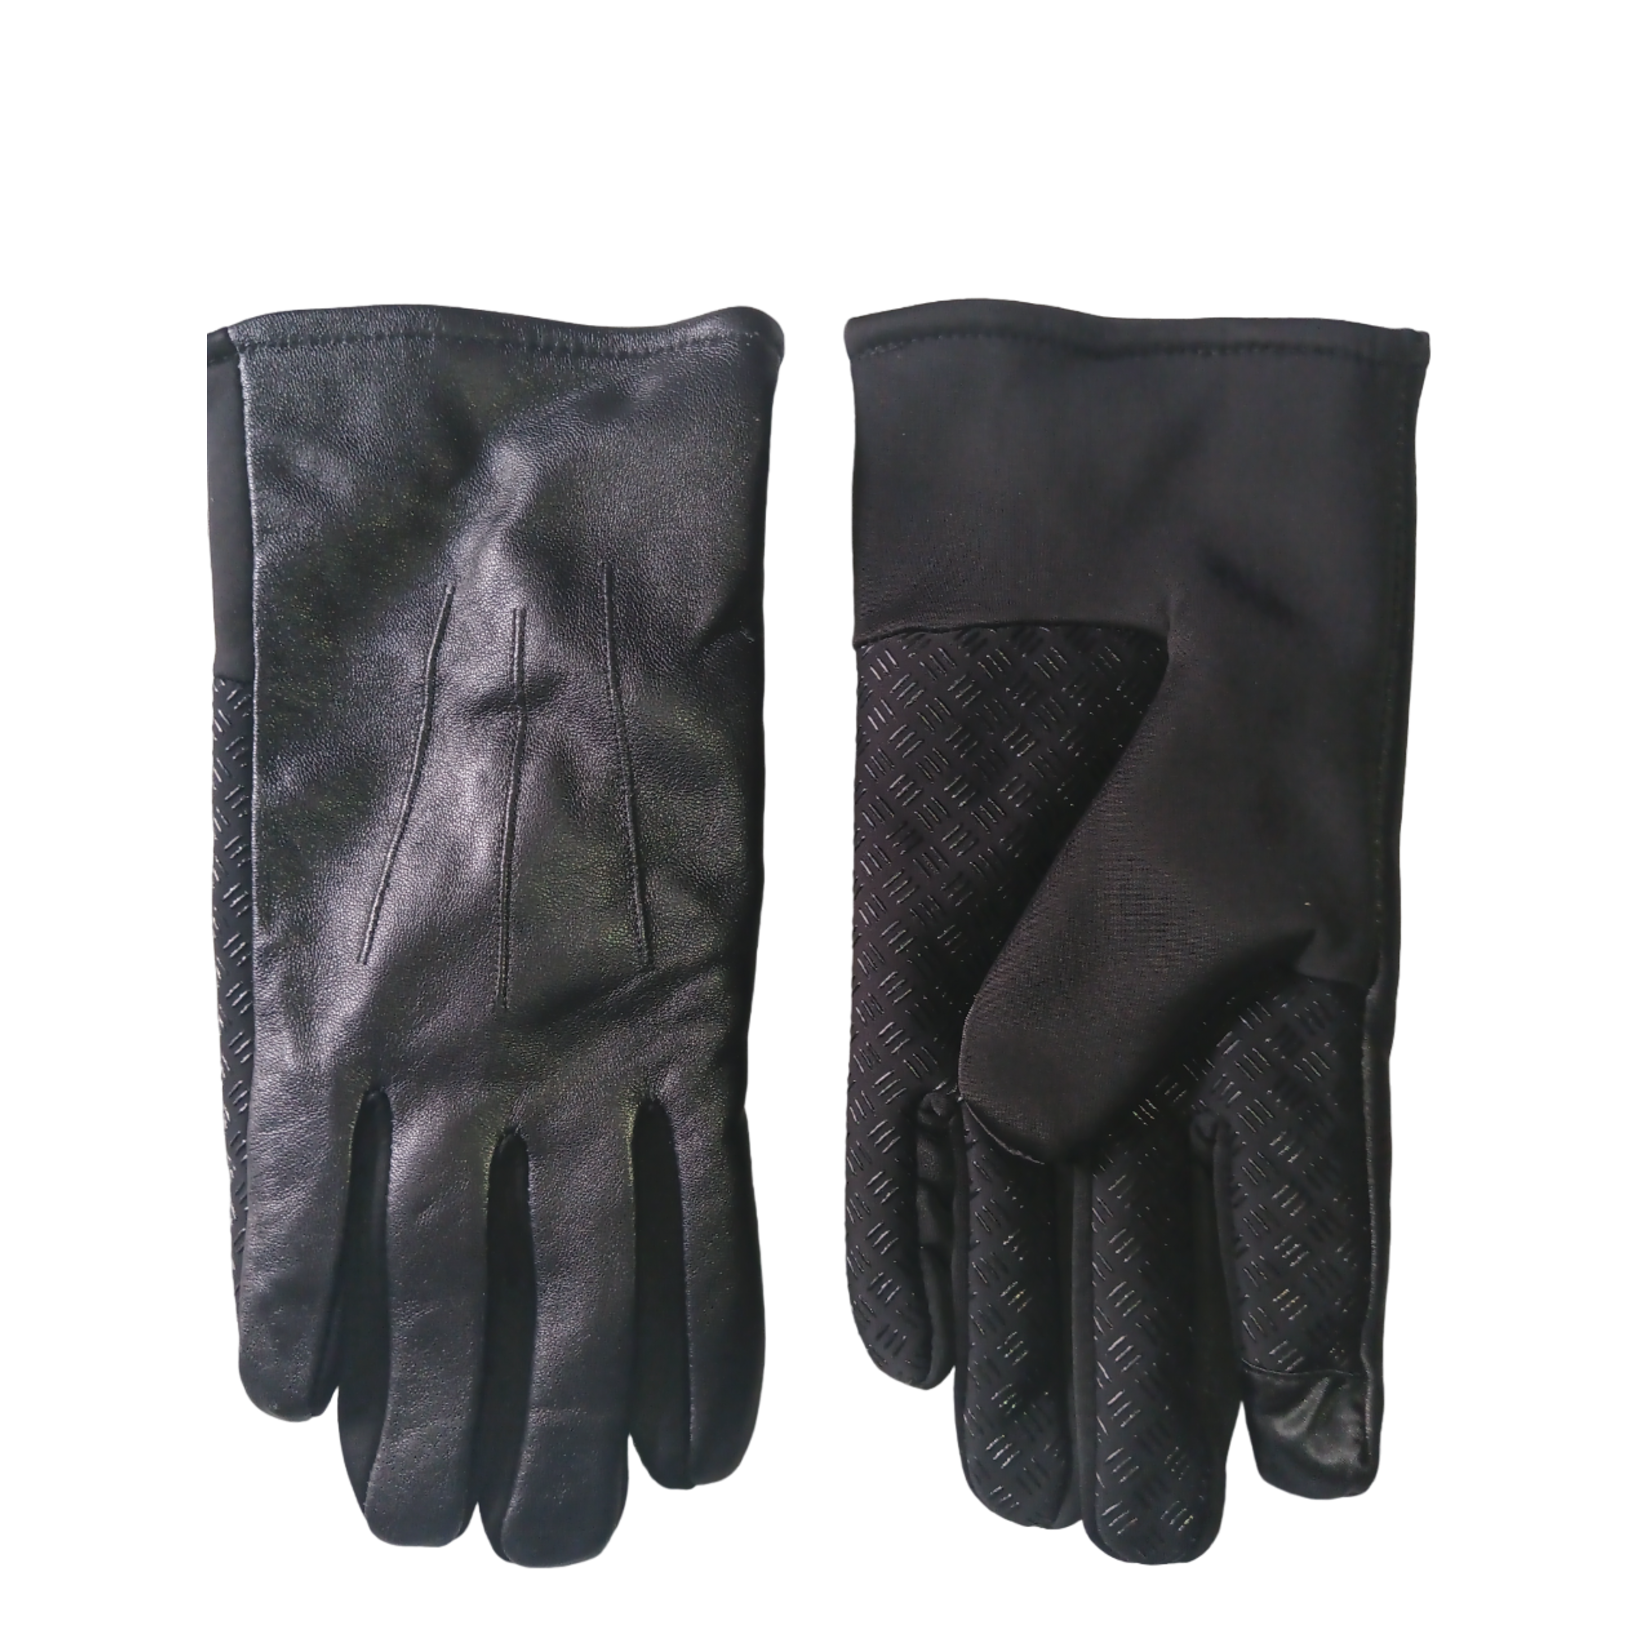 Bloomingdales Bloomingdale's Men's Black Leather Gloves, XL